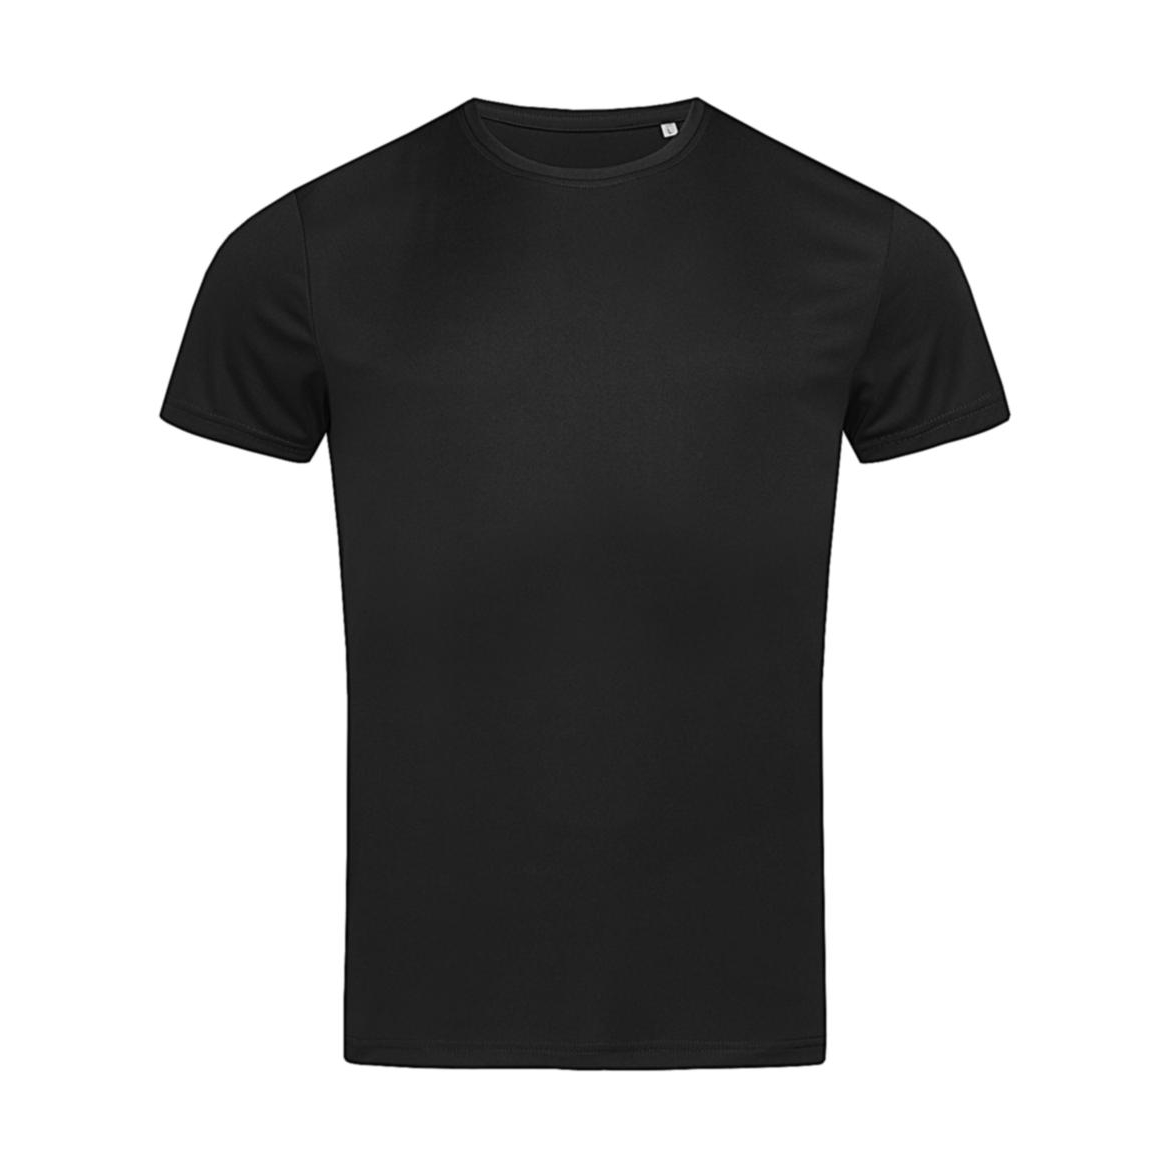 Triko pánské Stedman sportovní tričko - černé, 3XL